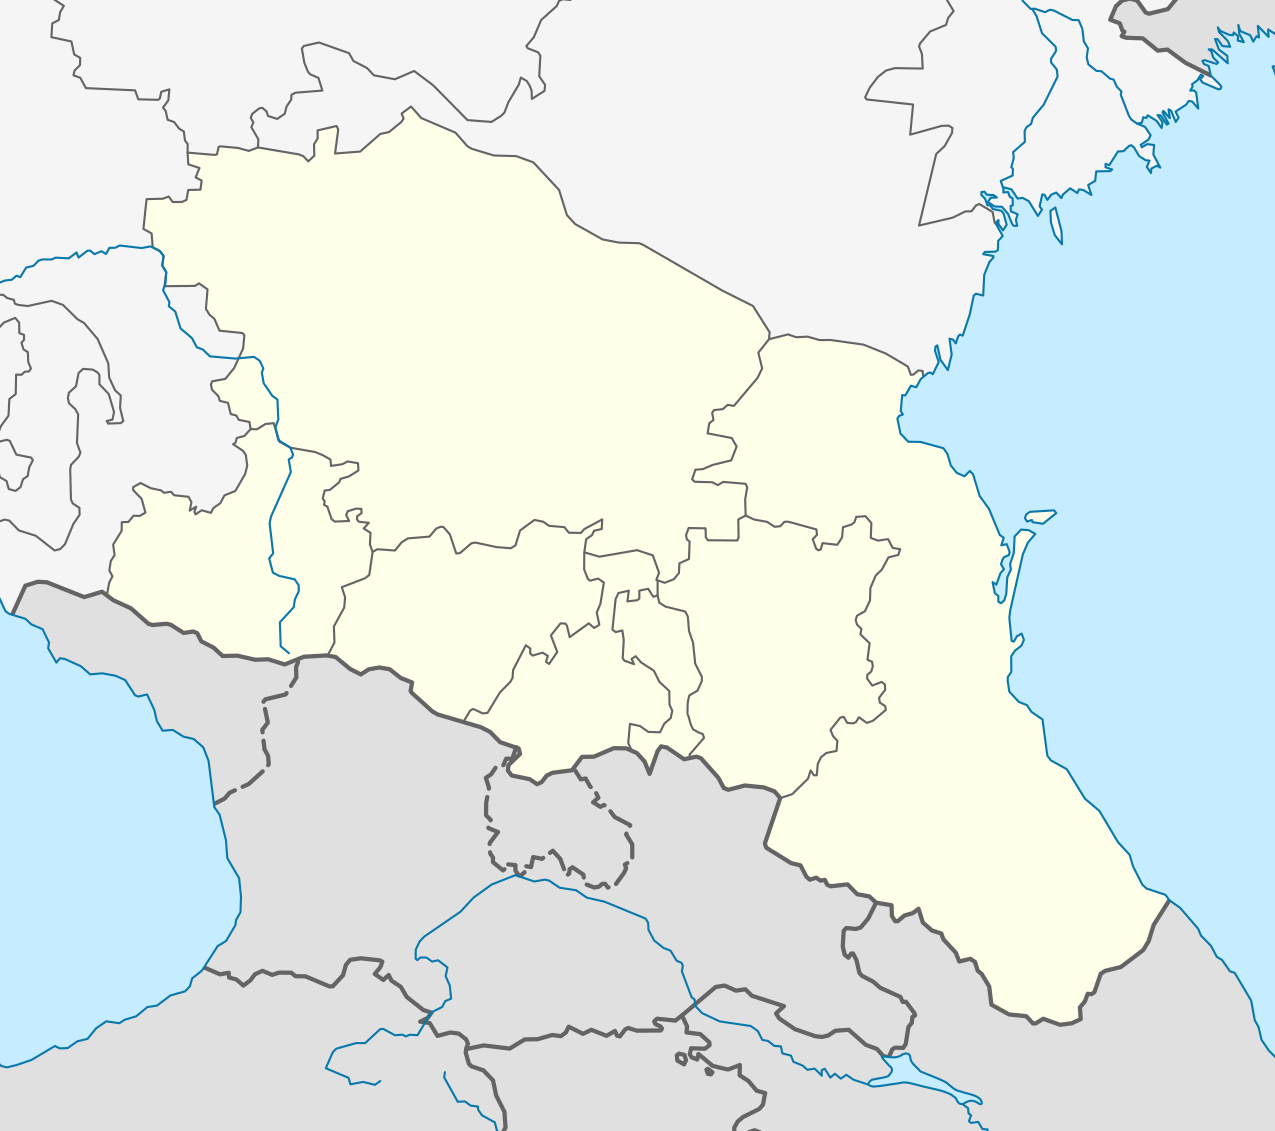 10 205 730 чел. (Северо-Кавказский федеральный округ)